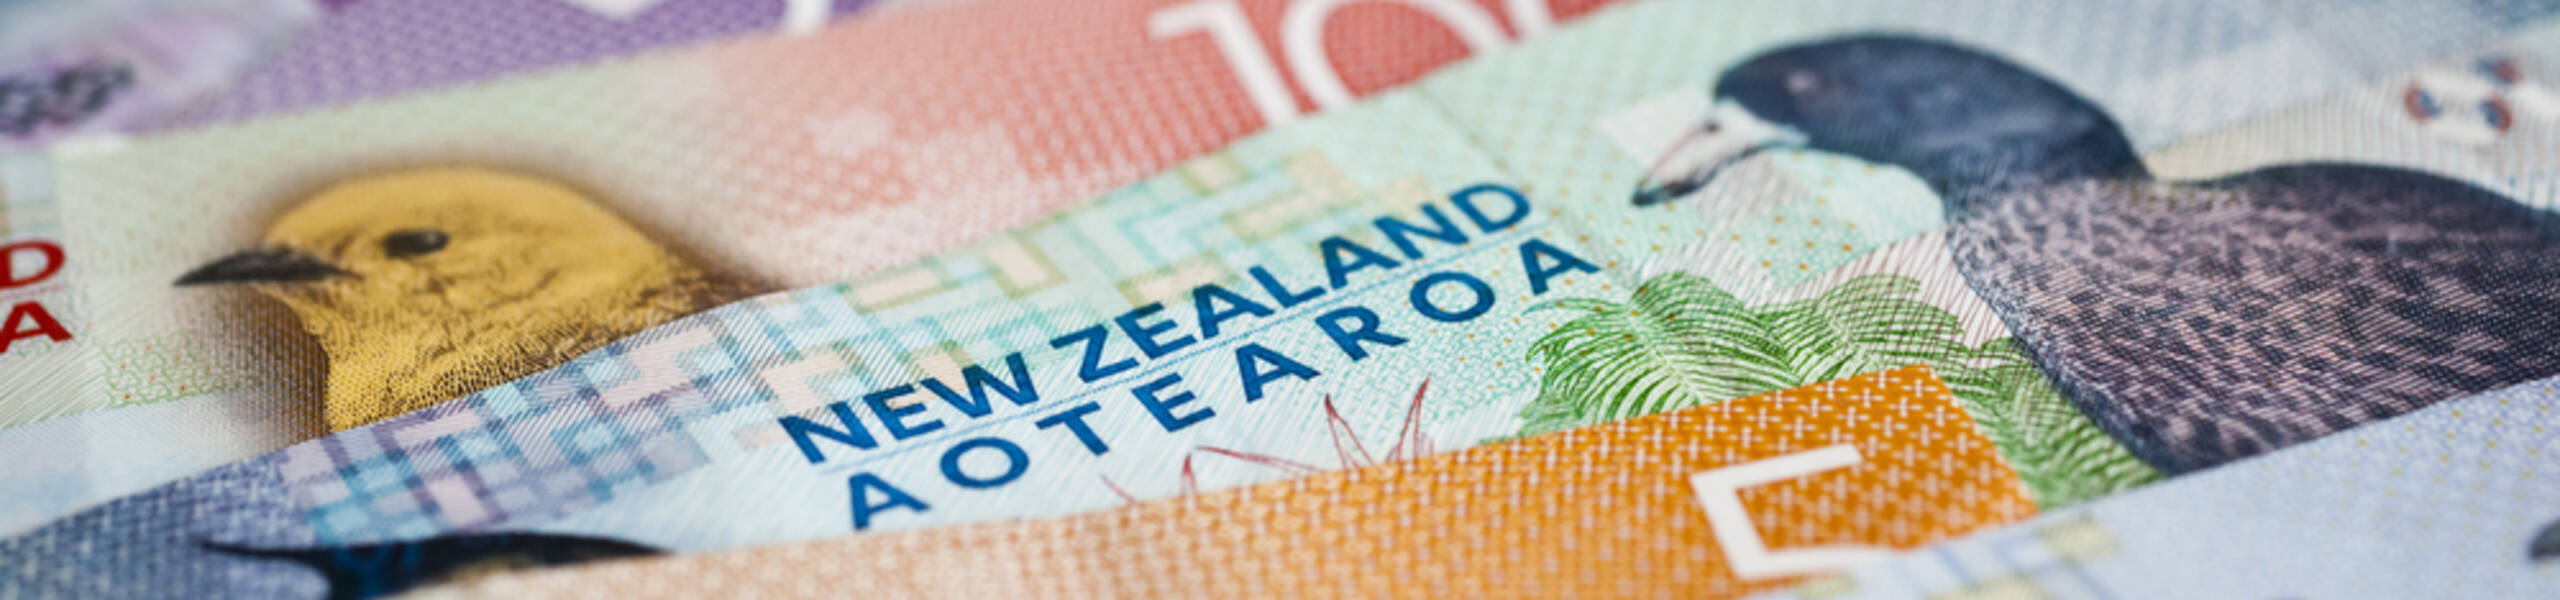 Kế hoạch giao dịch cặp ngoại tệ NZDUSD ngày 11/02/2019